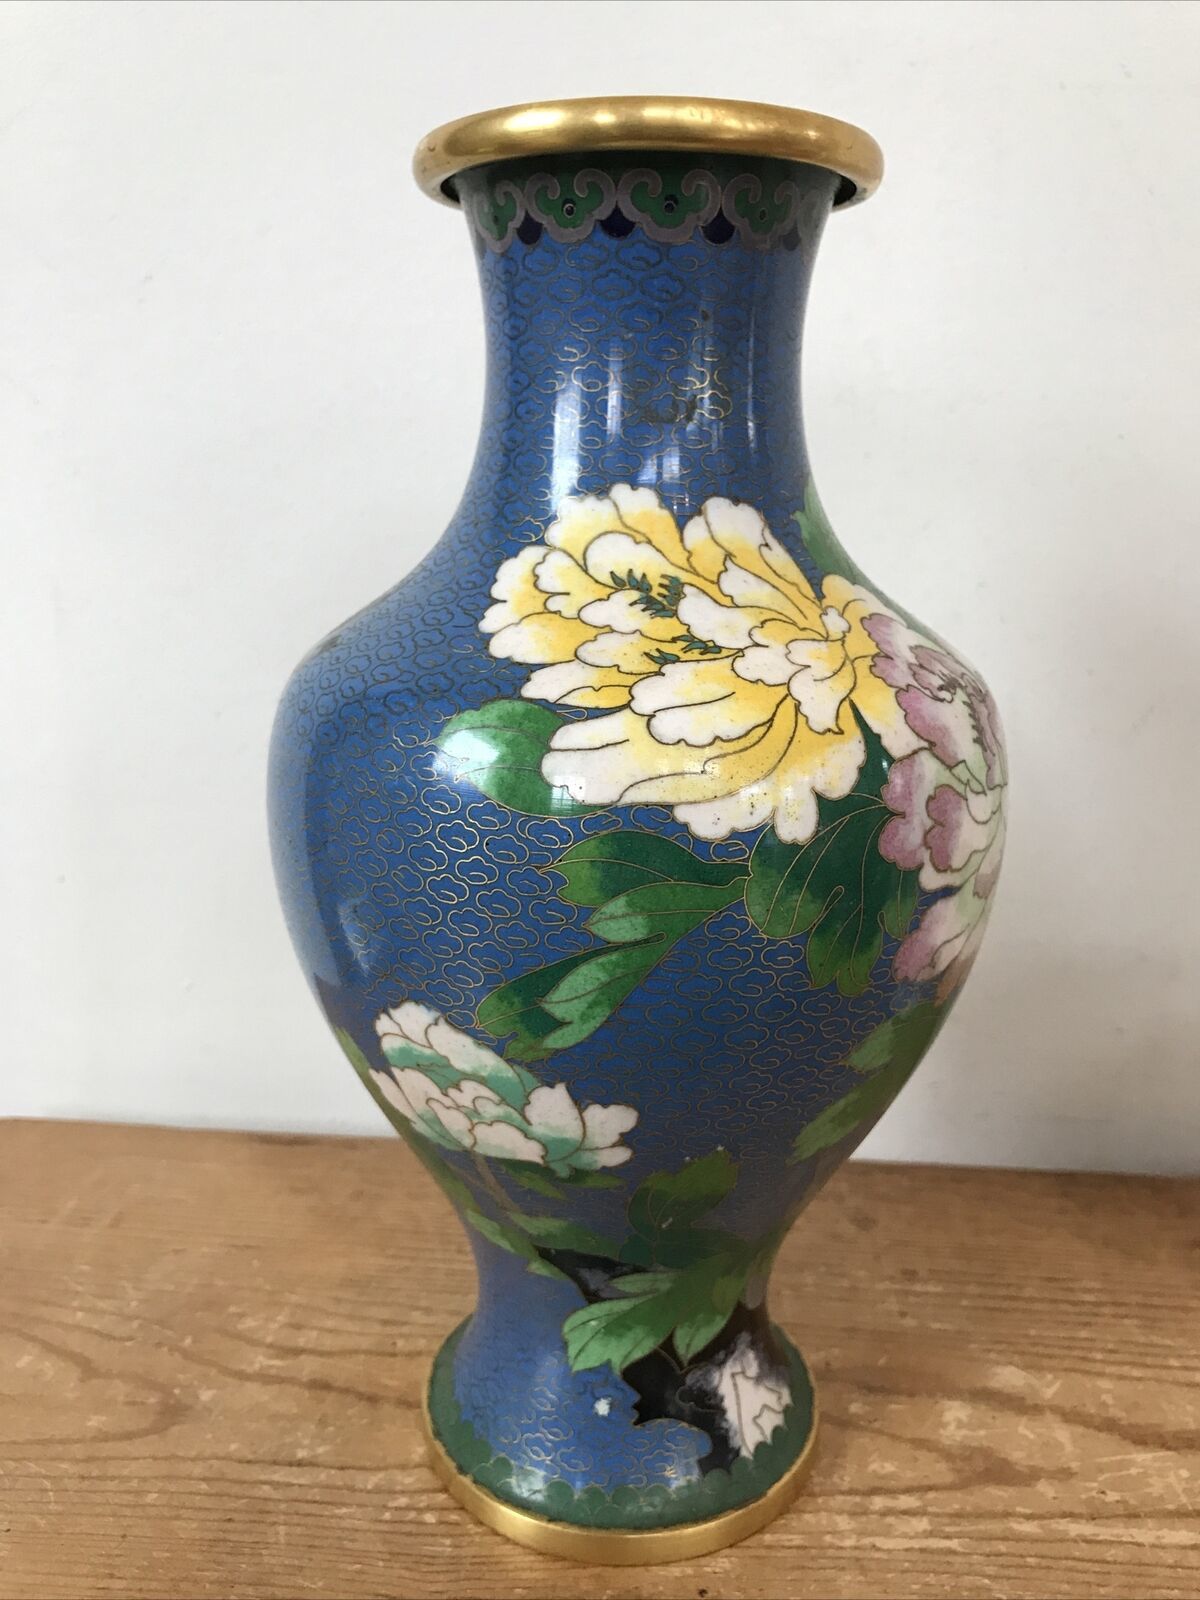 Primary image for Vtg Japanese Asian Cloisonne Enamel Brass Chrysanthemum Floral Urn Vase 10.25"